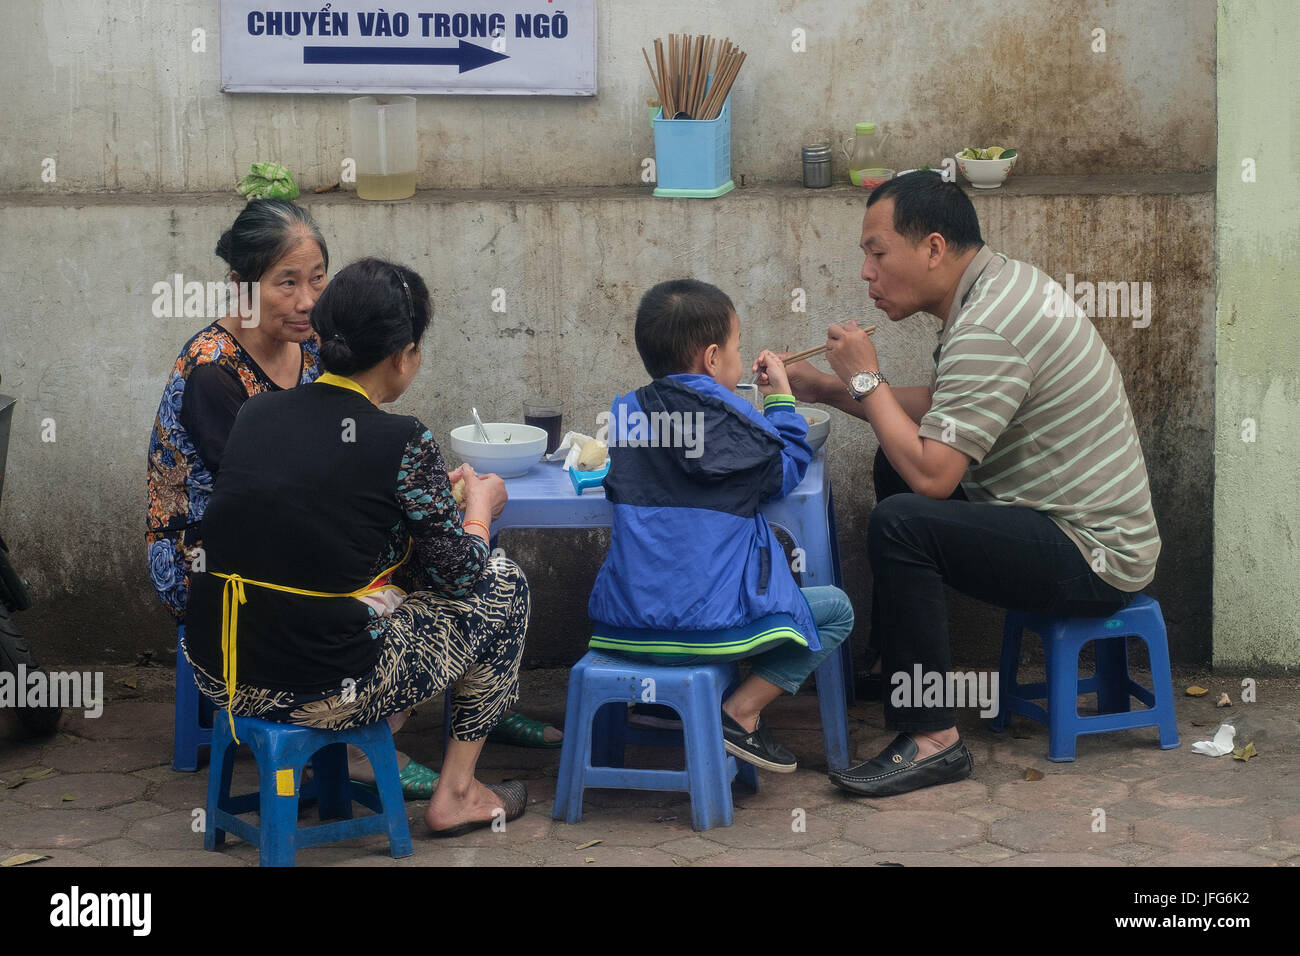 Vietnamesische Leute essen an einem improvisierten Restaurant auf dem Bürgersteig, Hanoi, Vietnam, Asien Stockfoto